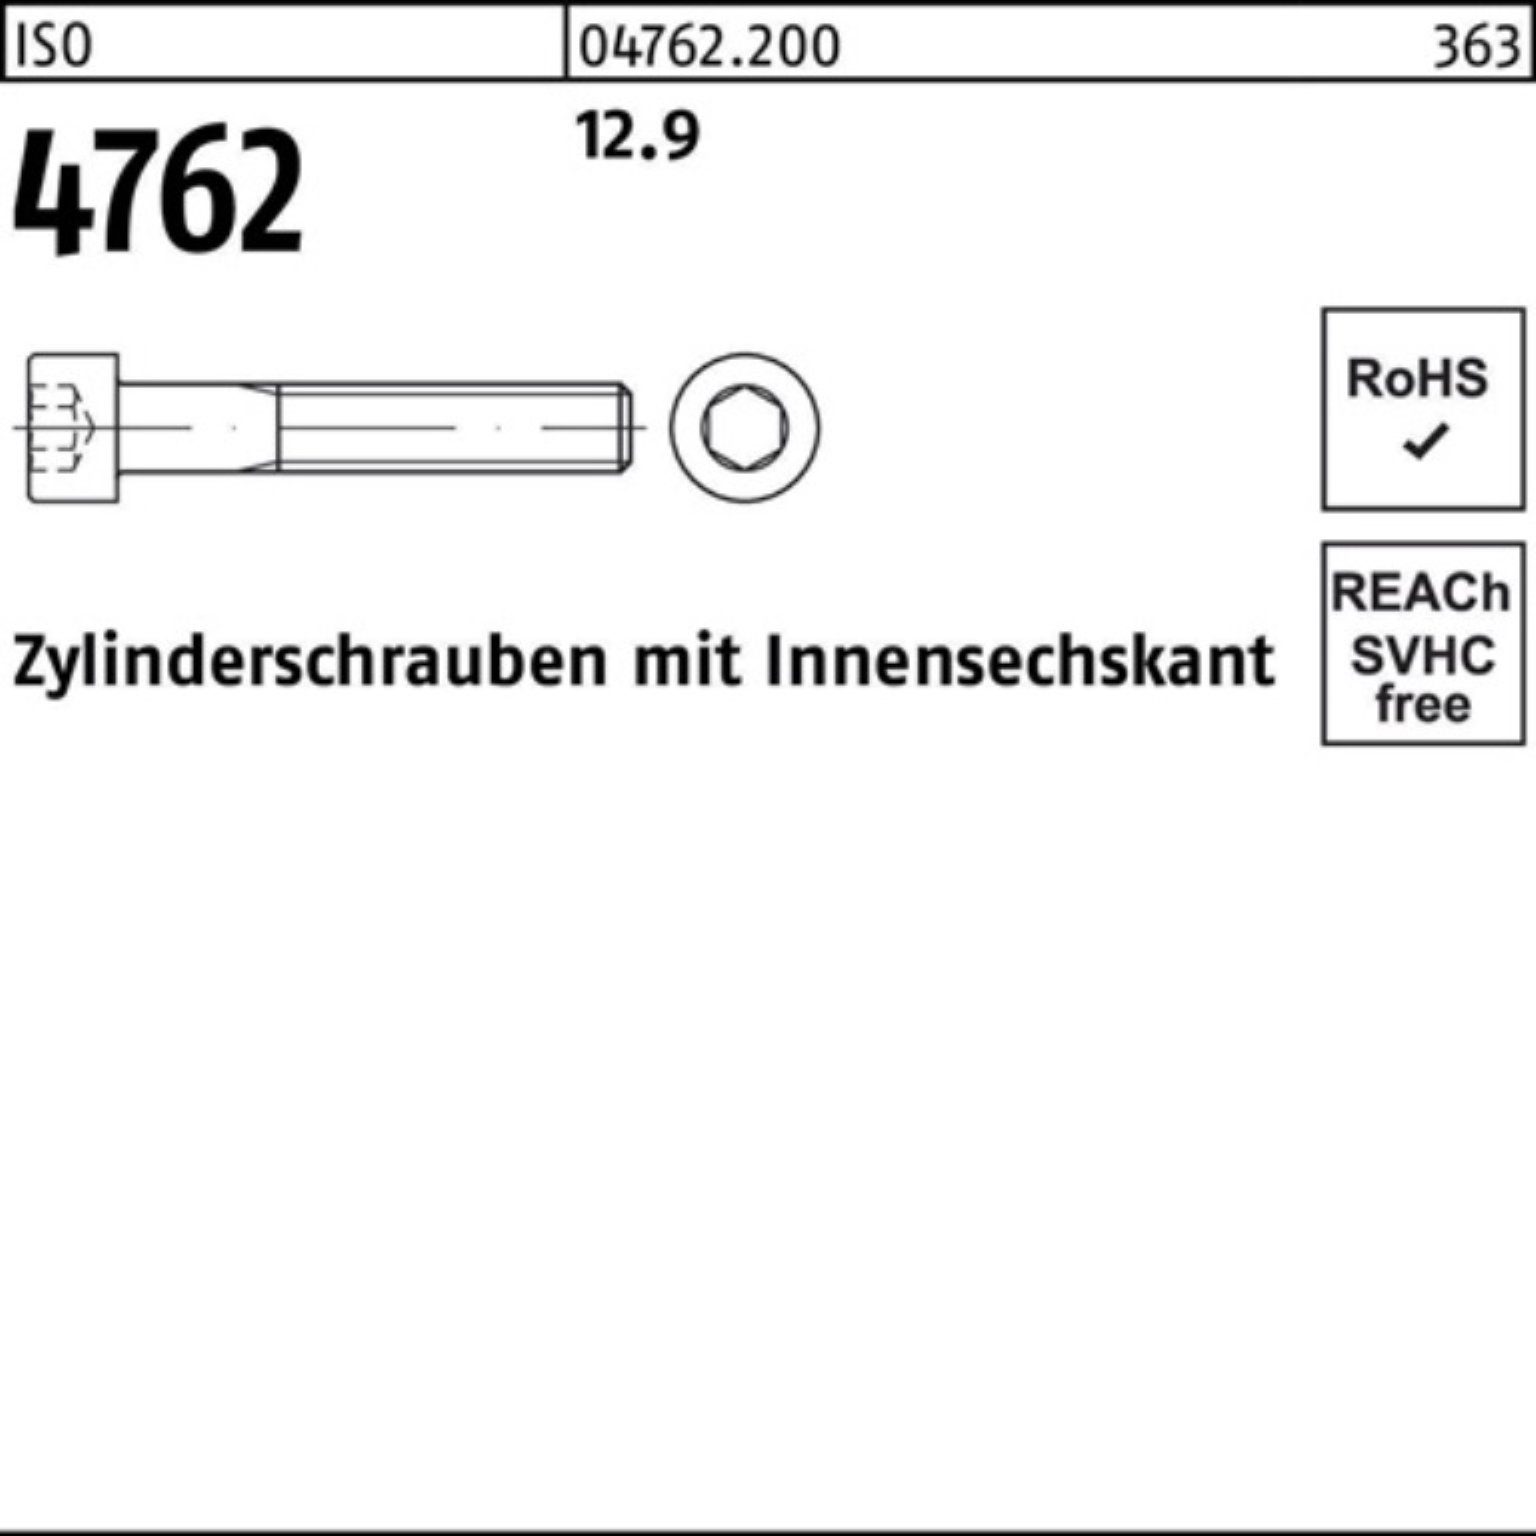 Innen-6kt Zylinderschraube 12.9 25 Zylinderschraube 80 100er Pack 4762 Reyher ISO Stück M20x